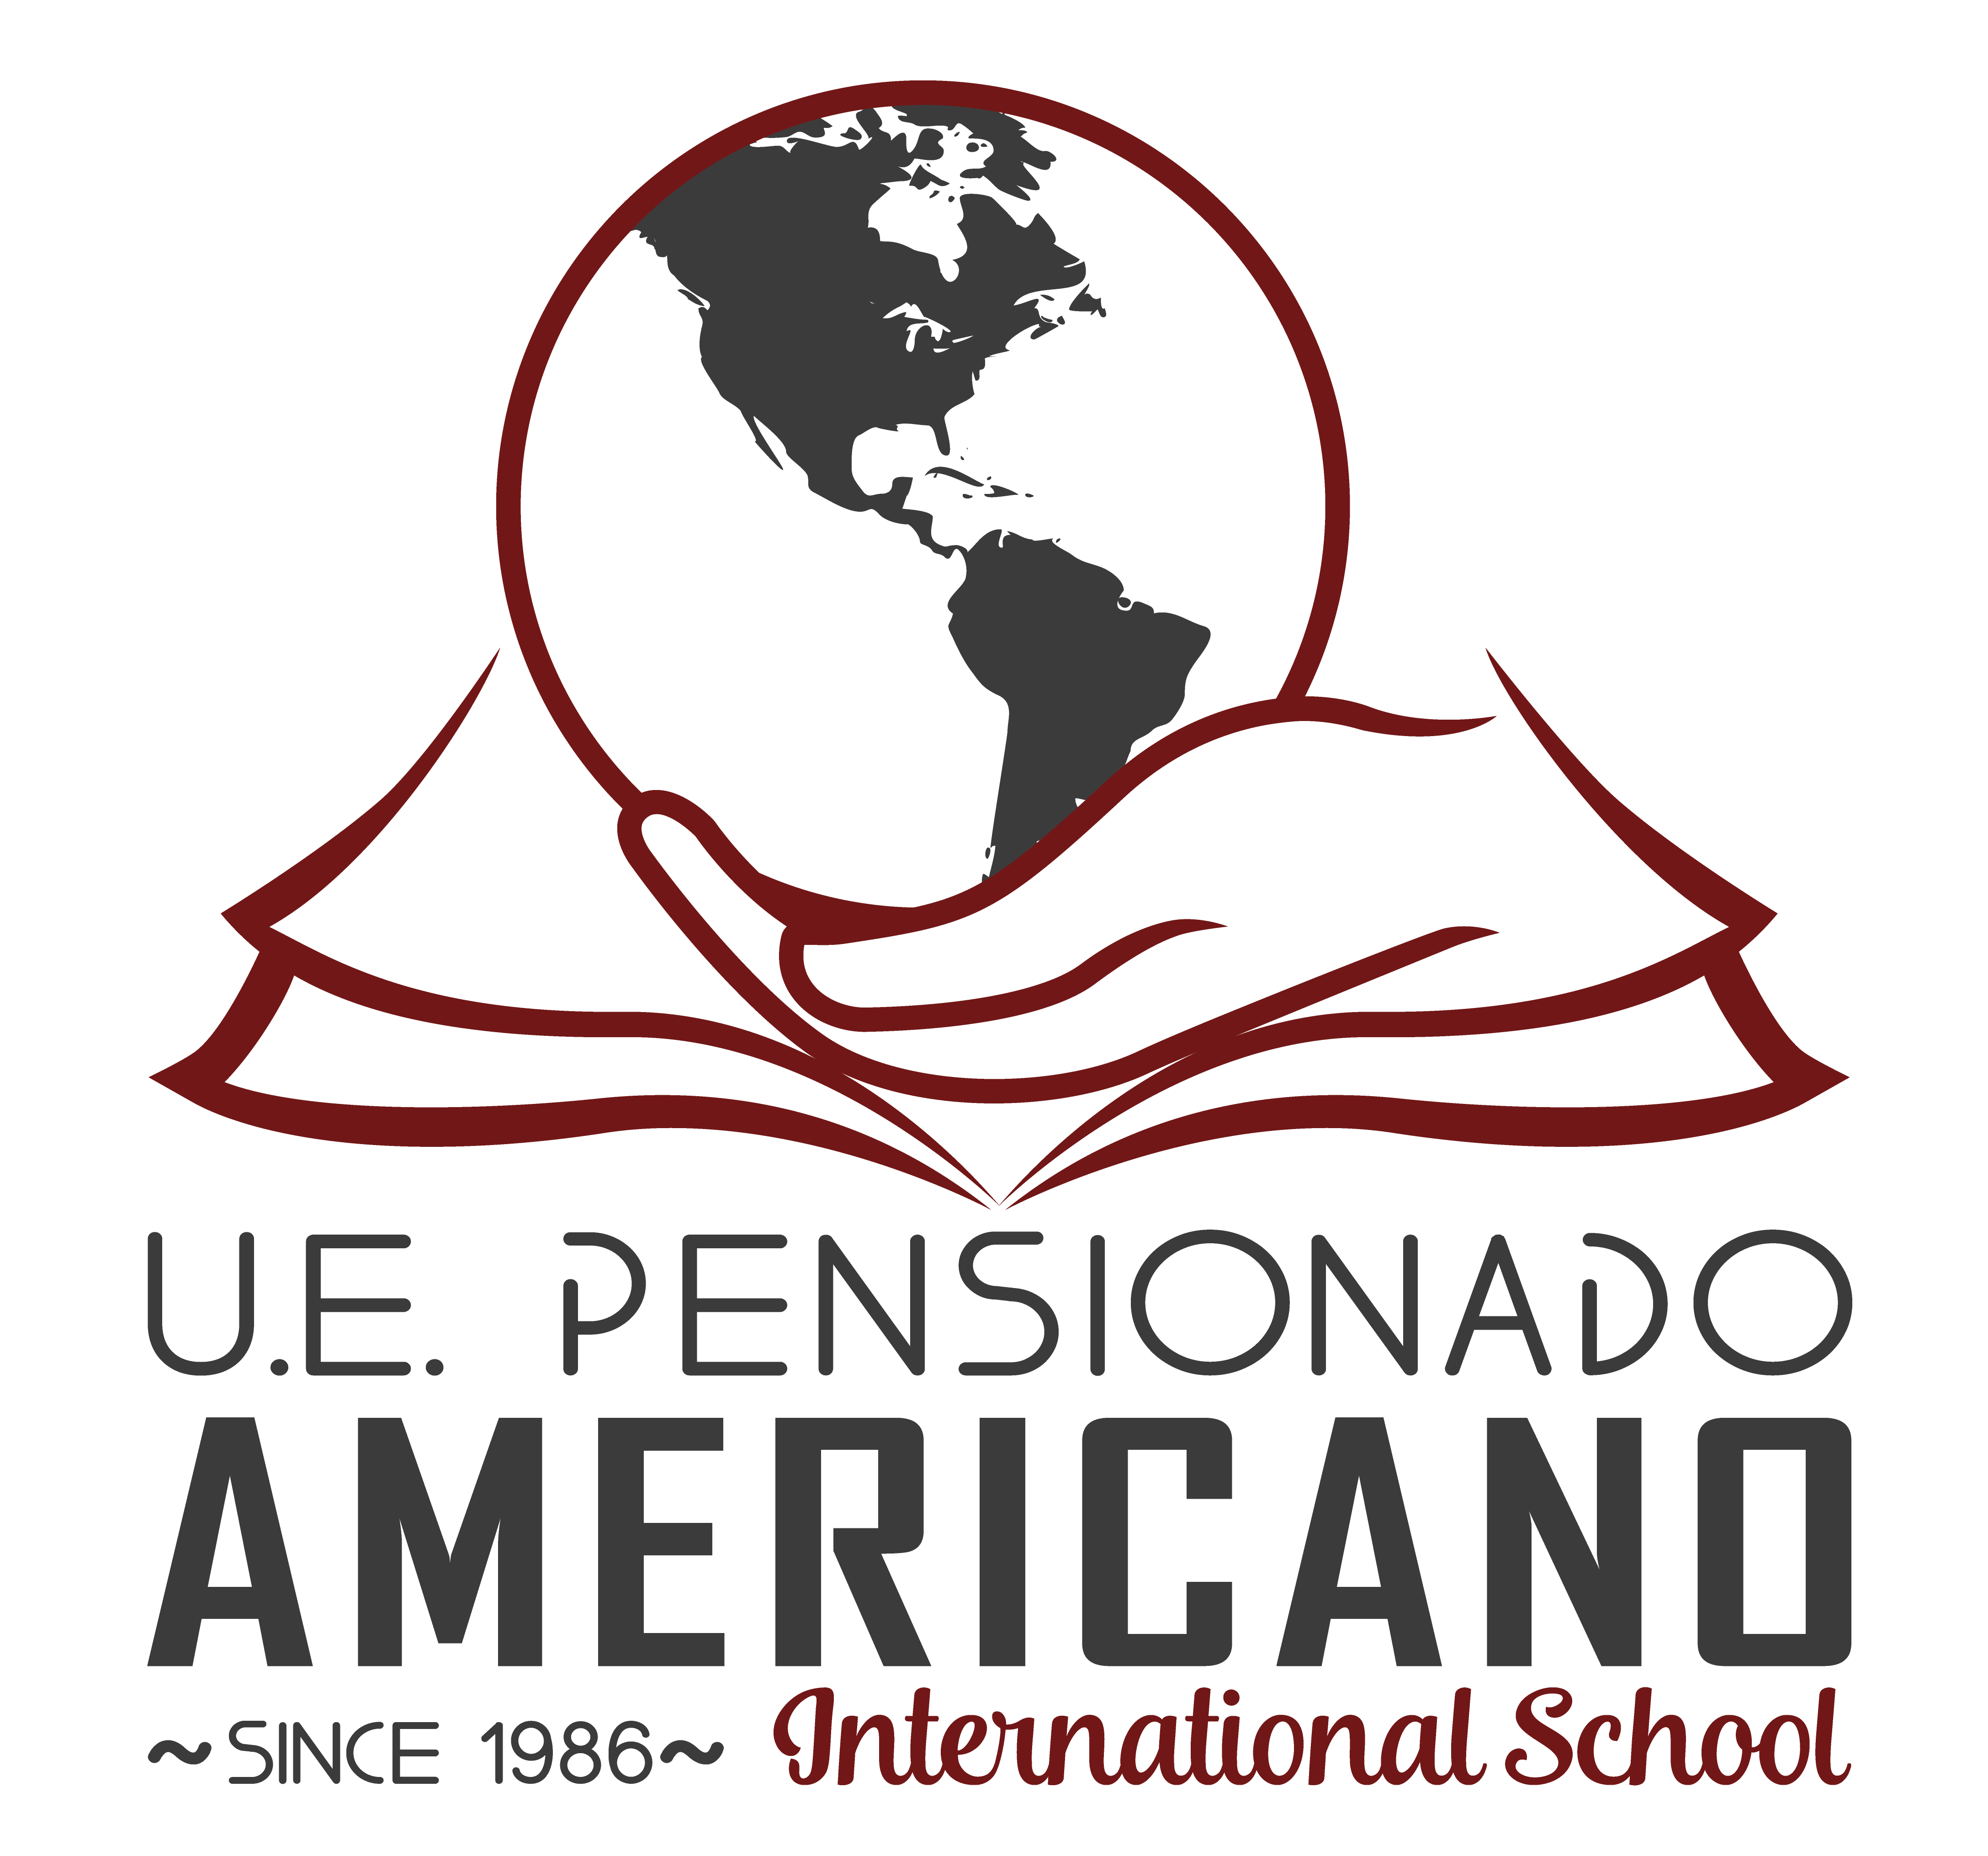 Pensionado Americano International School